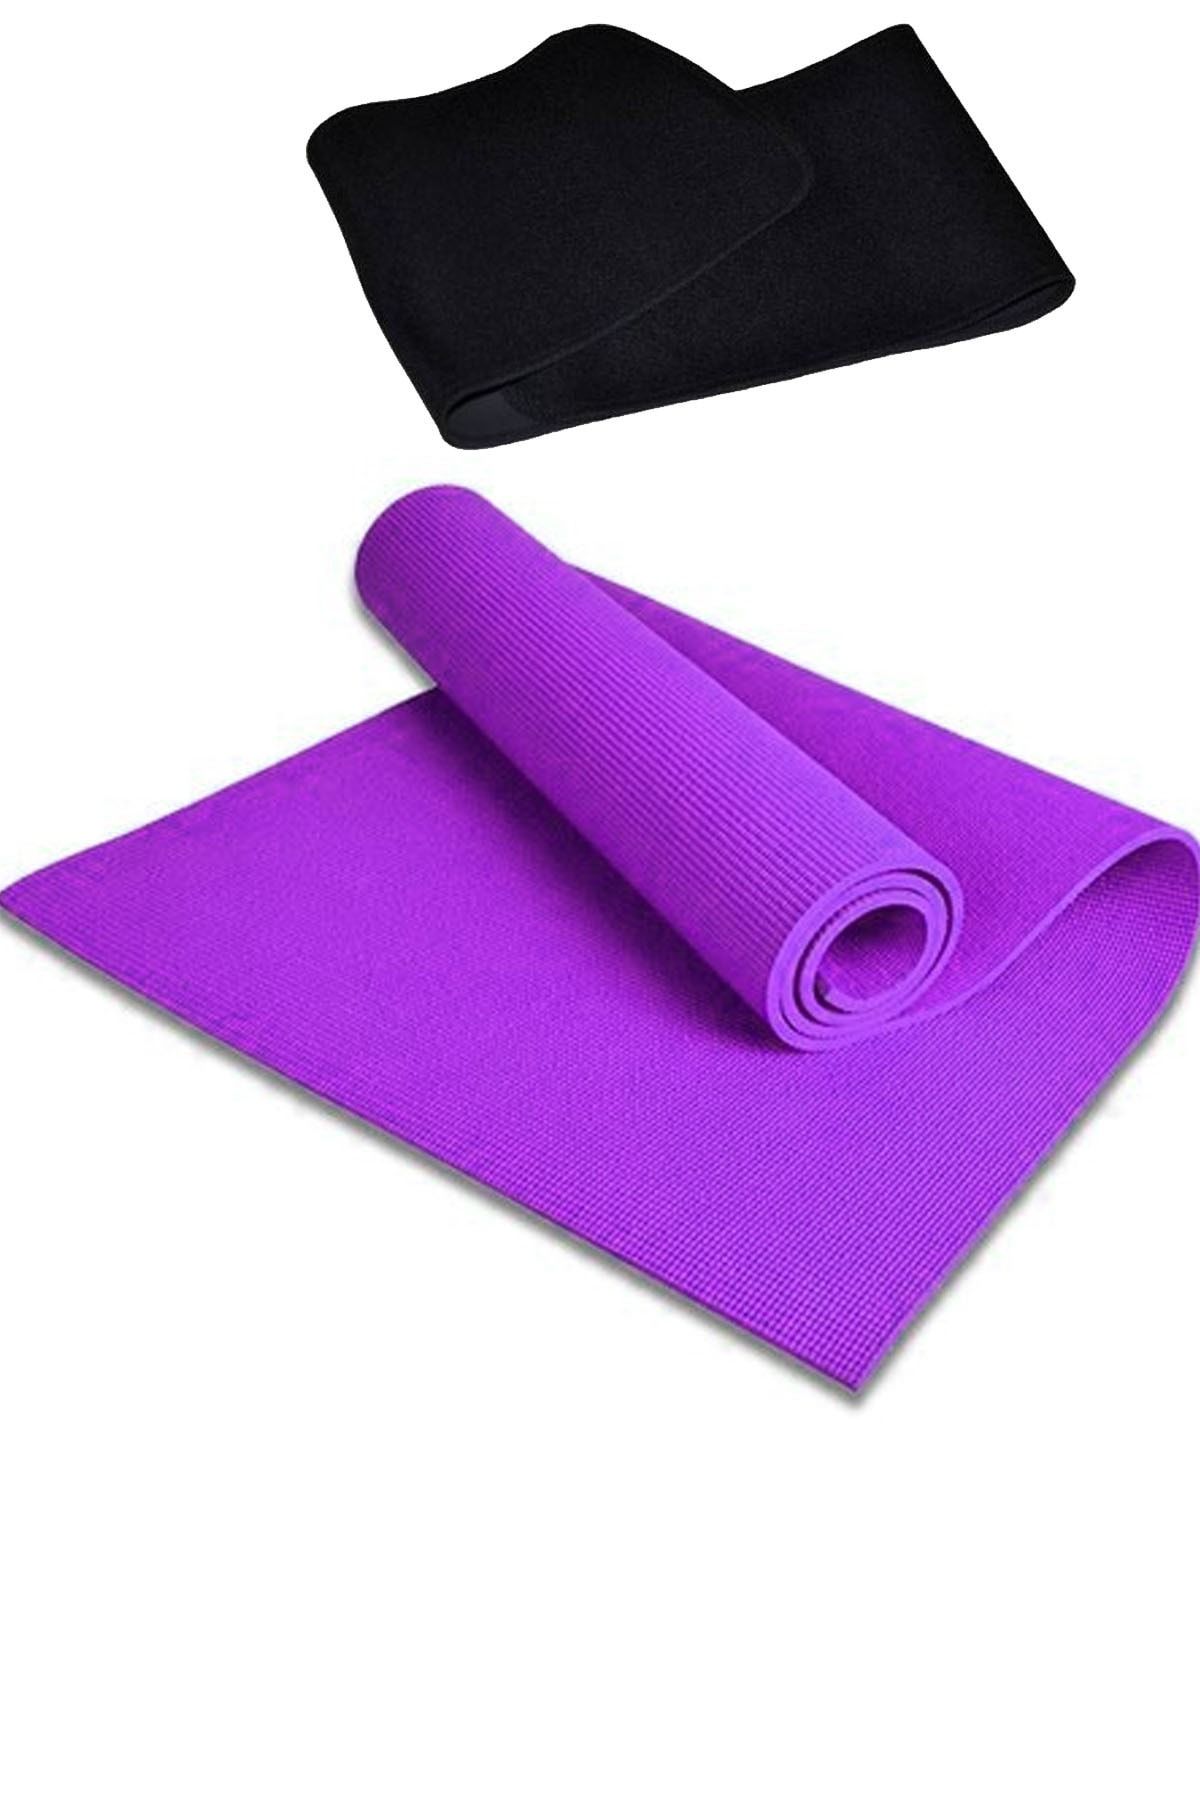 Delta Pvc 6 Mm Kalınlıkta Pilates Yoga Minderi, Termal Bel Kemeri Terleme Egzersiz Jimnastik